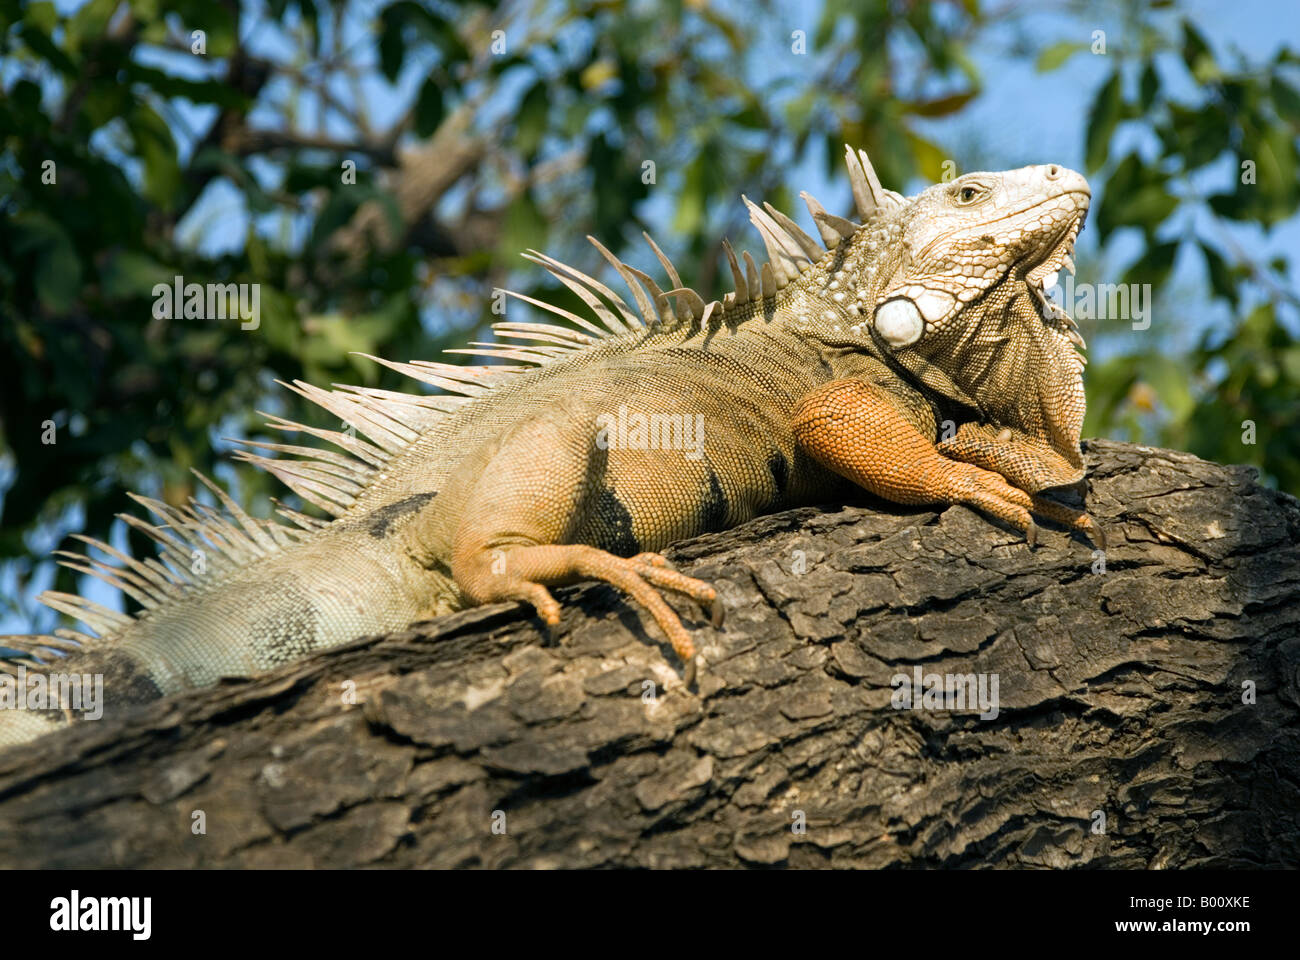 Una iguana en el Parque del Centenario, Cartagena de Indias, Colombia Foto de stock